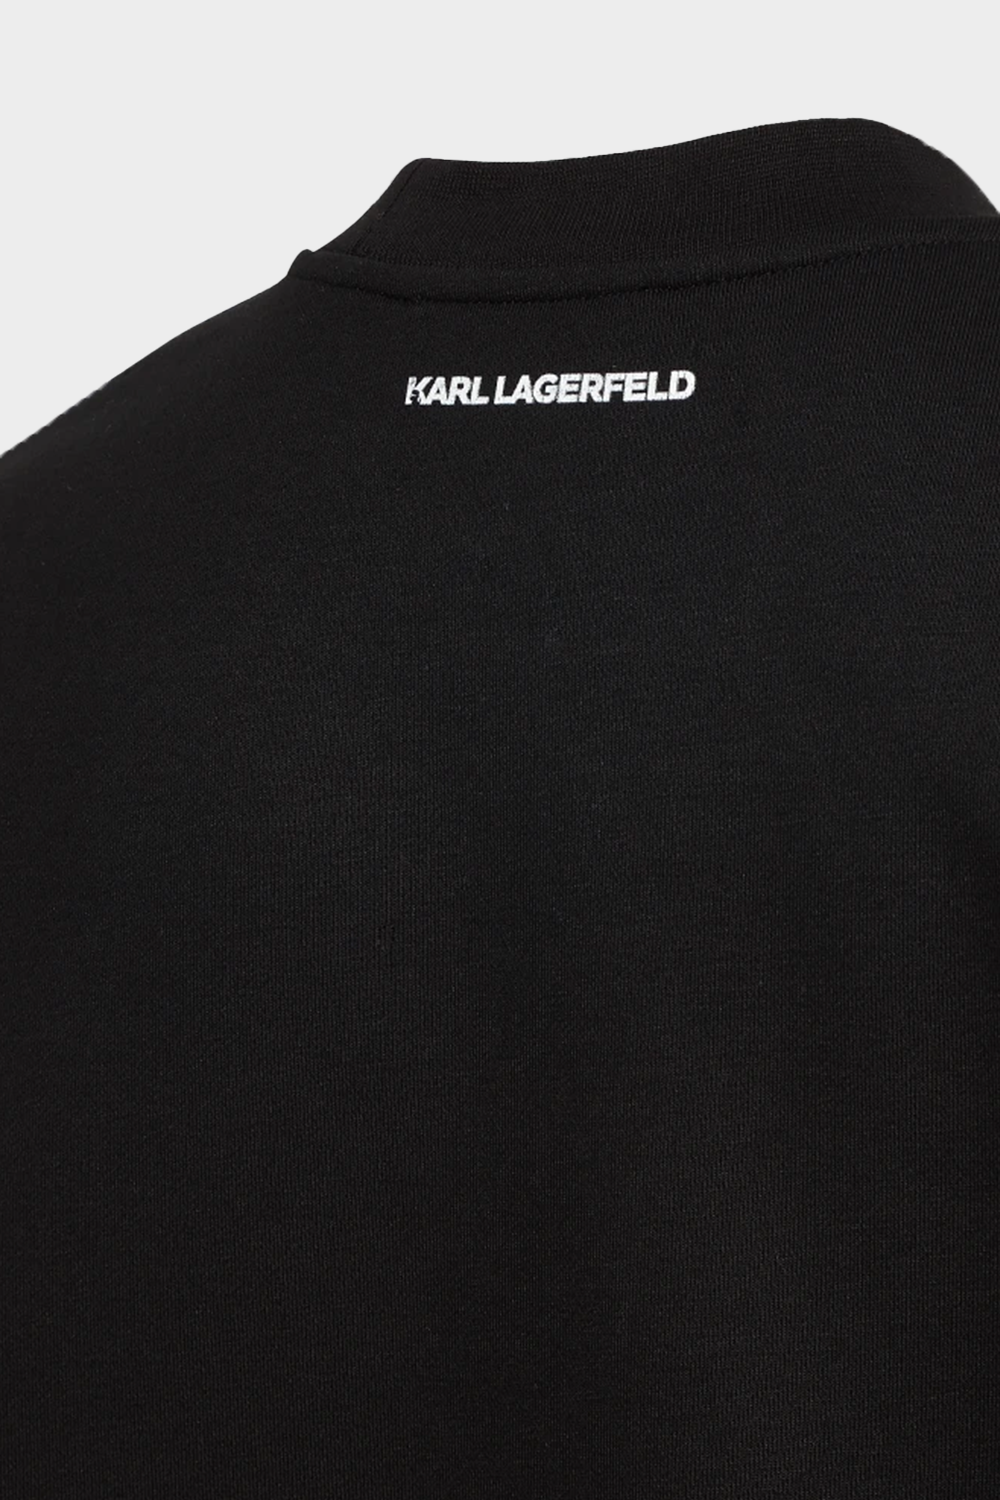 סווטשירט לנשים בצבע שחור KARL LAGERFELD Vendome online | ונדום .